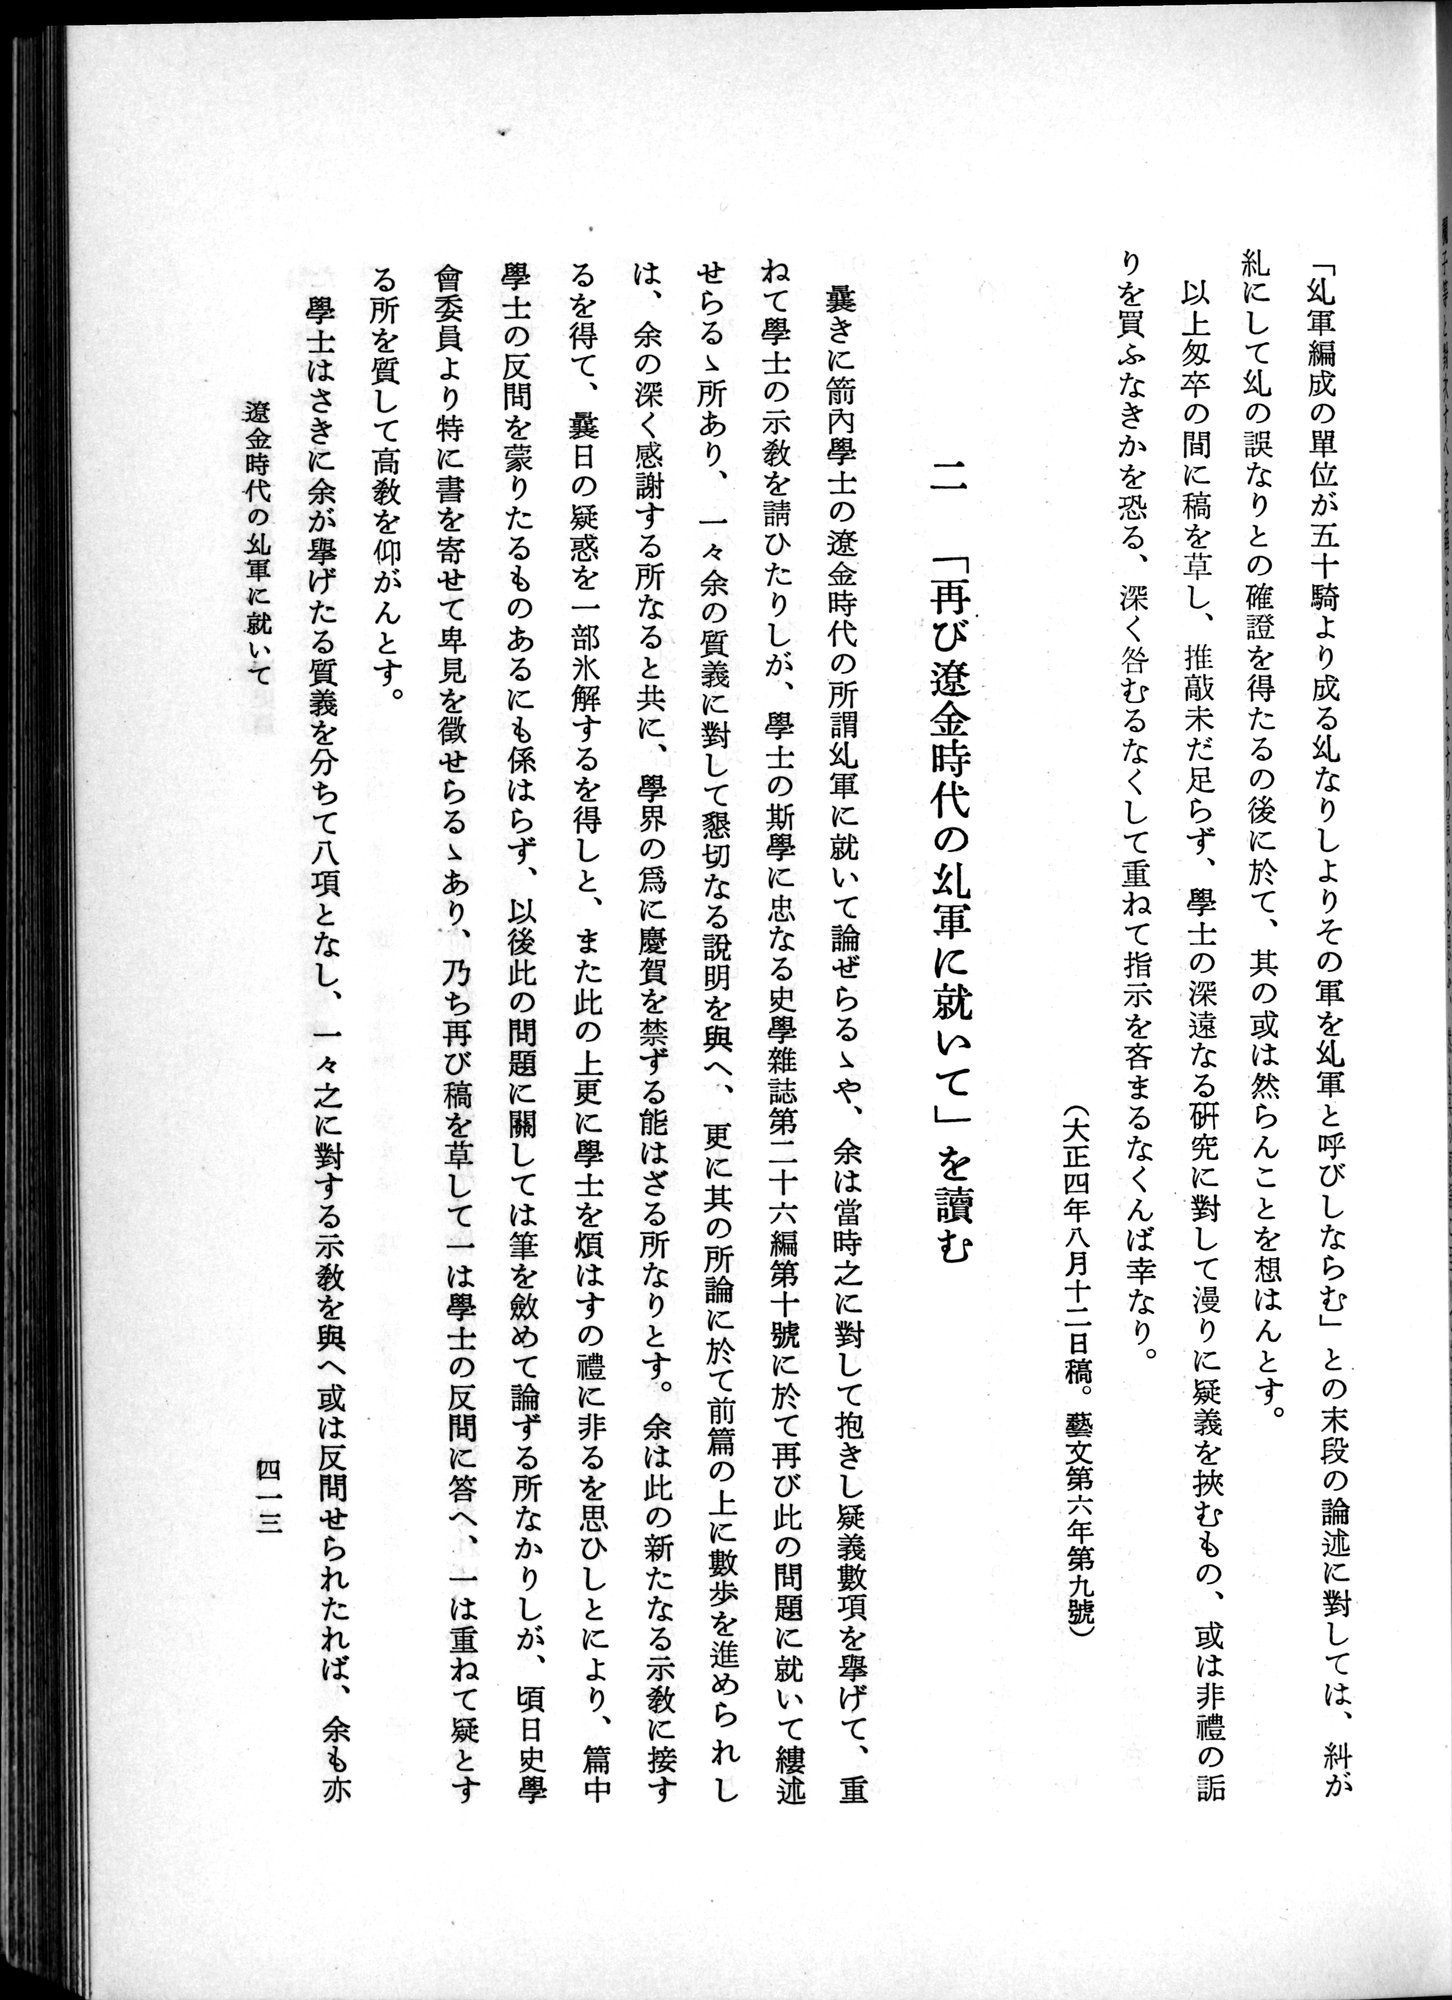 羽田博士史学論文集 : vol.1 / Page 451 (Grayscale High Resolution Image)